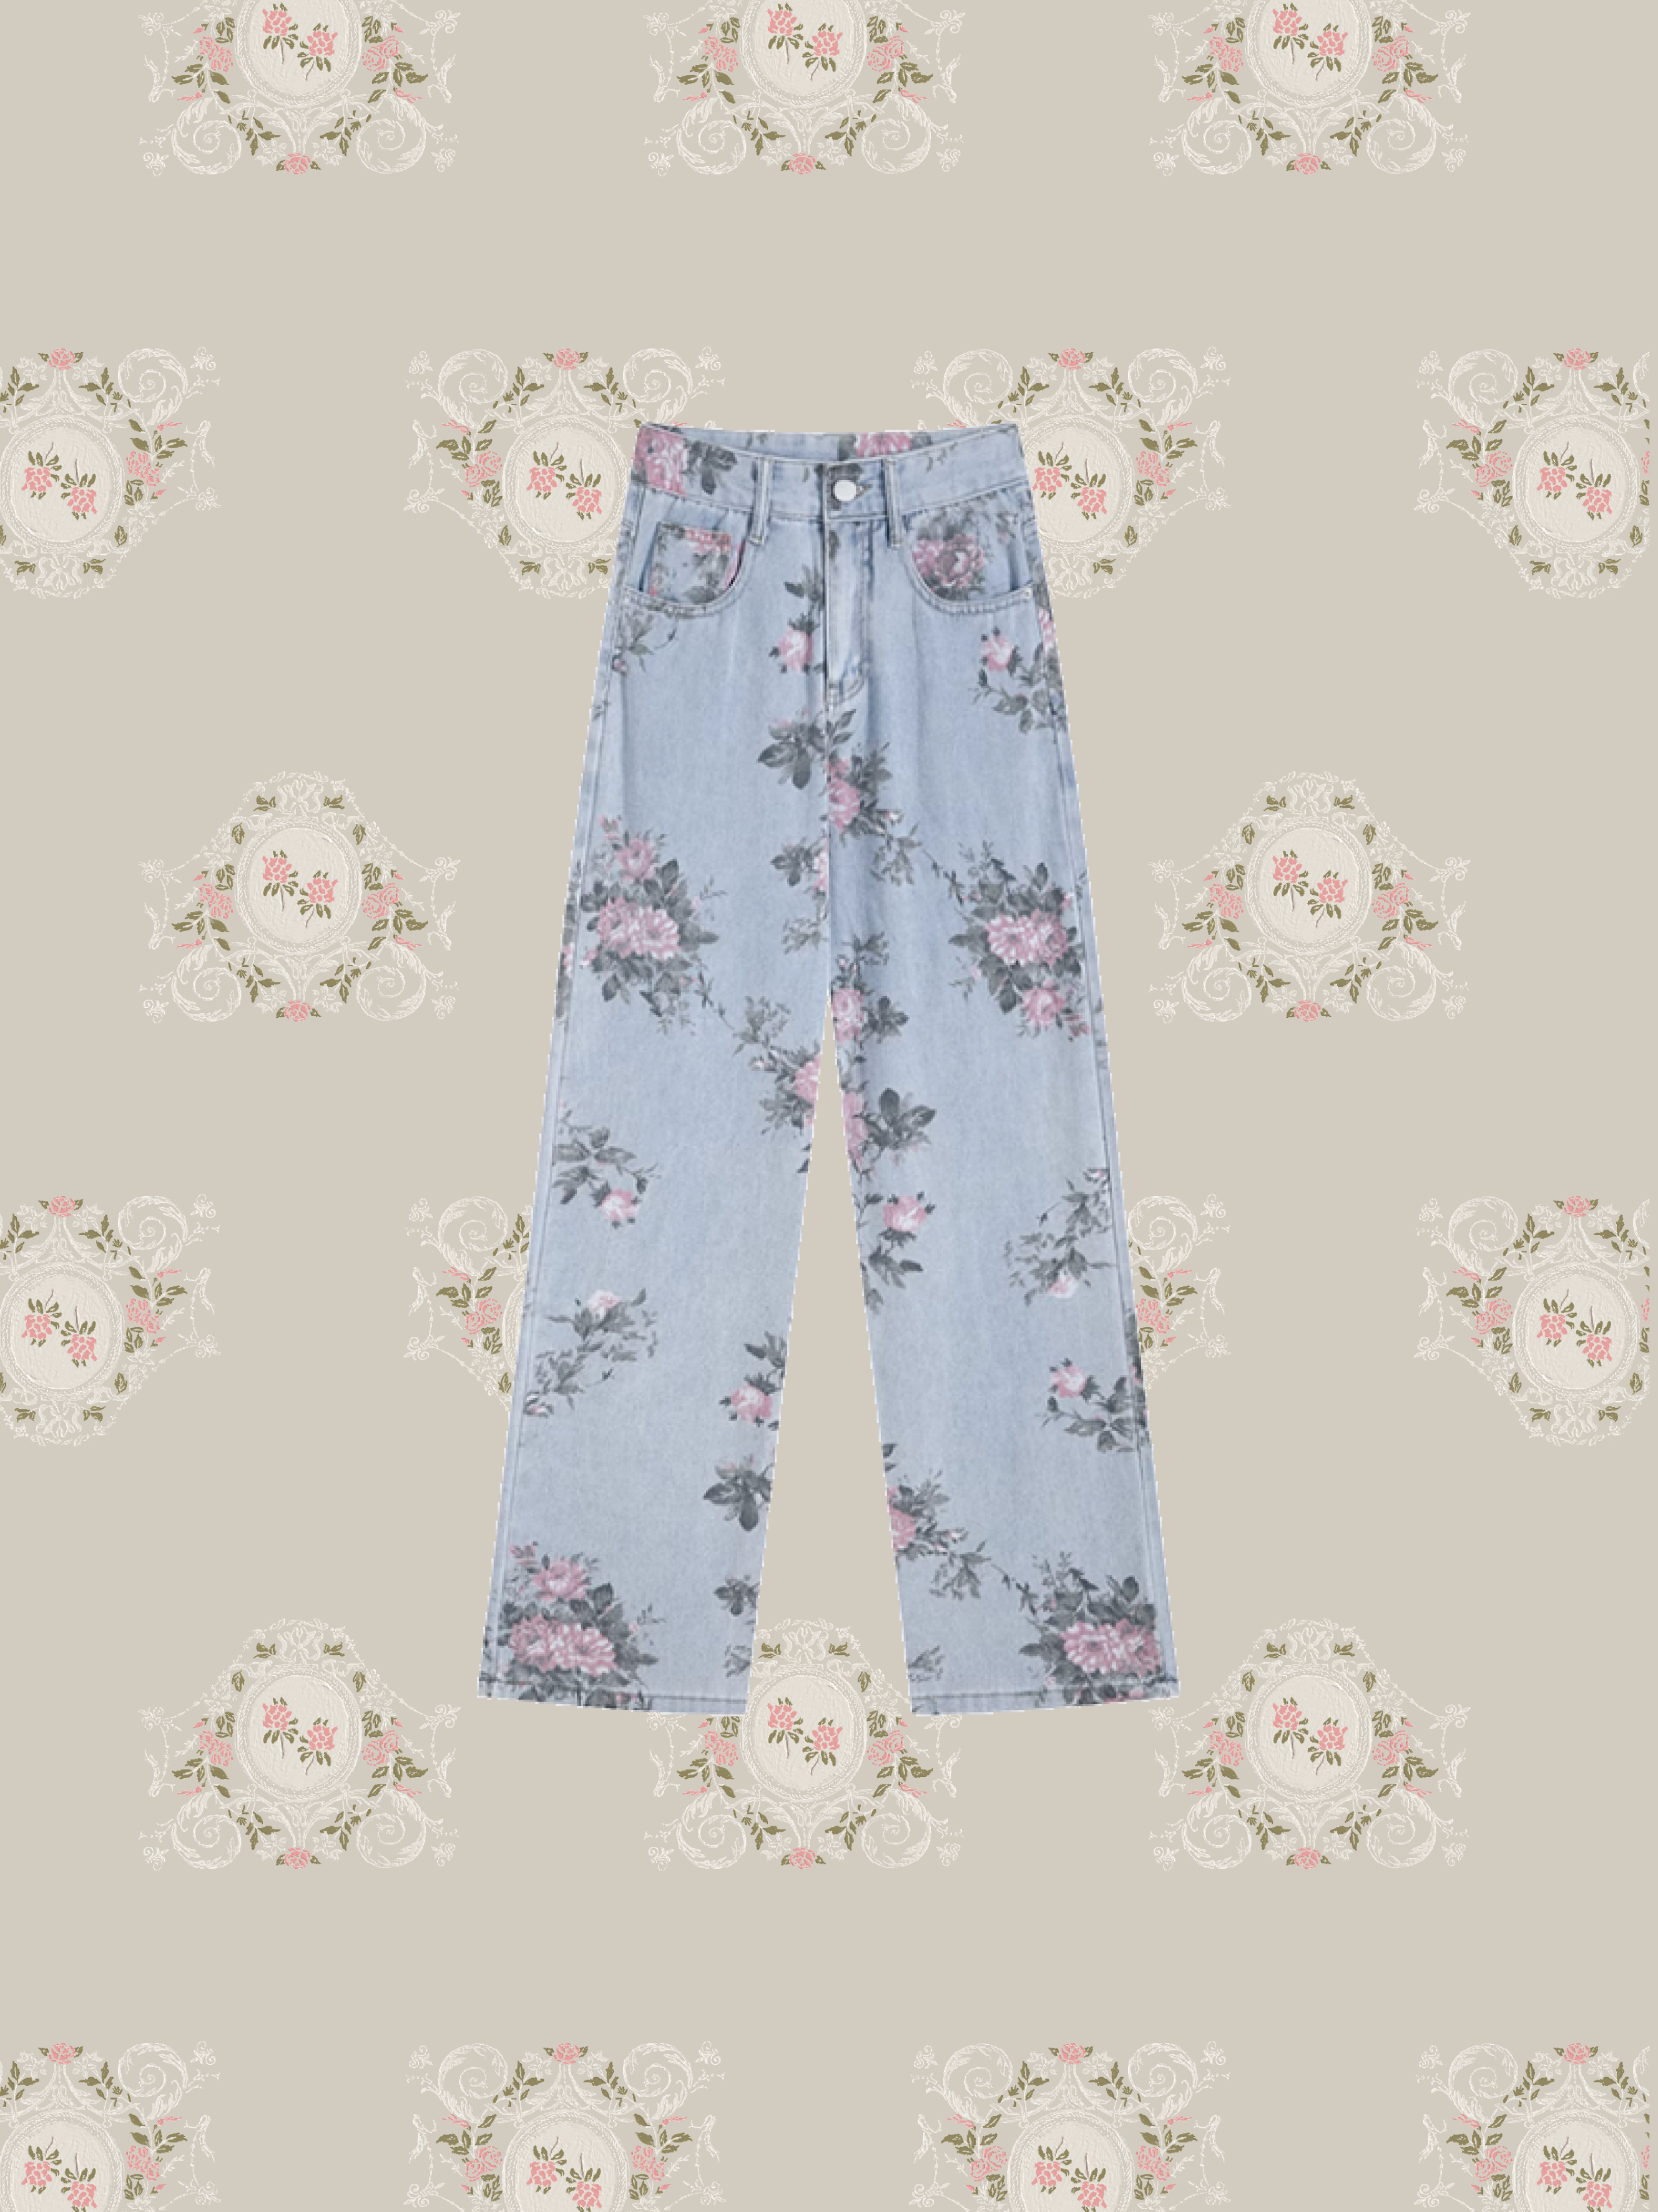 Vintage Garden Style Denim Pants/ヴィンテージガーデンスタイルデニムパンツ